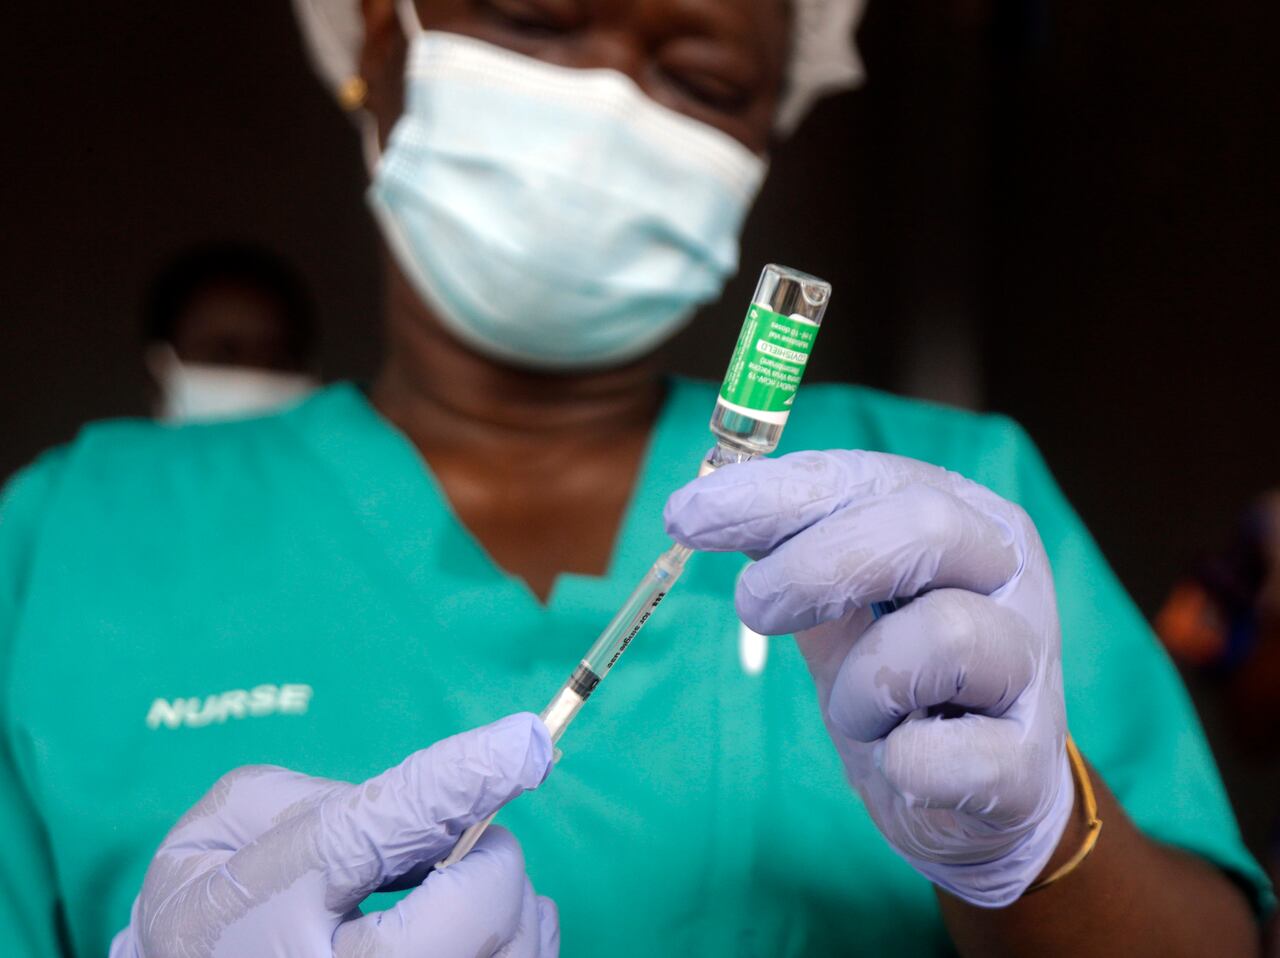 Una enfermera prepara una de las vacunas contra el COVID-19 en Nigeria, con el fármaco de AstraZeneca producido por el Serum Institute of India y distribuido a través de la iniciativa global COVAX, en el hospital Yaba Mainland de Lagos, Nigeria. (AP Foto/Sunday Alamba, archivo)